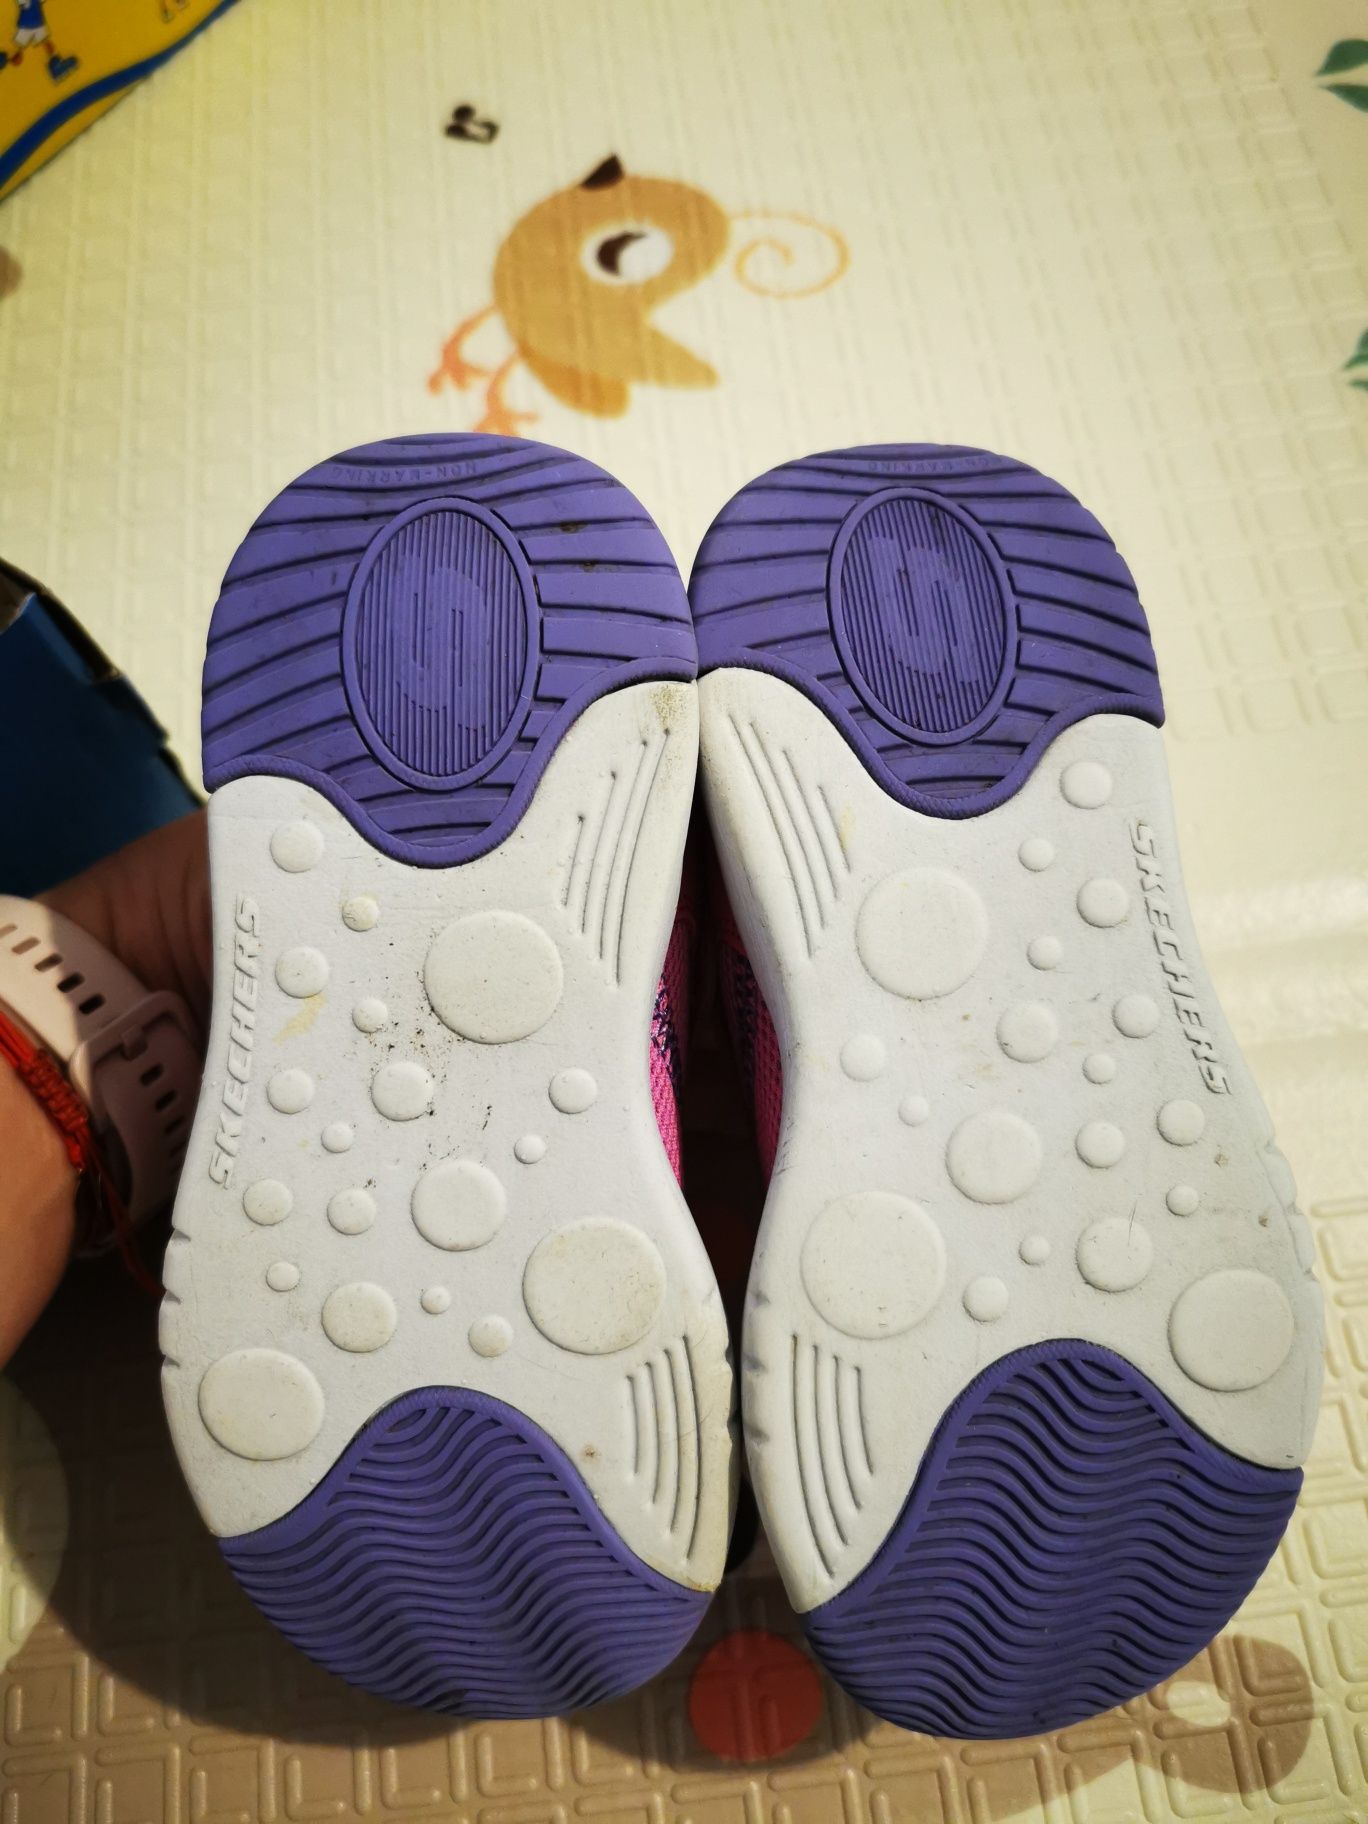 Adidasi Skechers copii, fete mărimea 26, aprox 17.5 cm